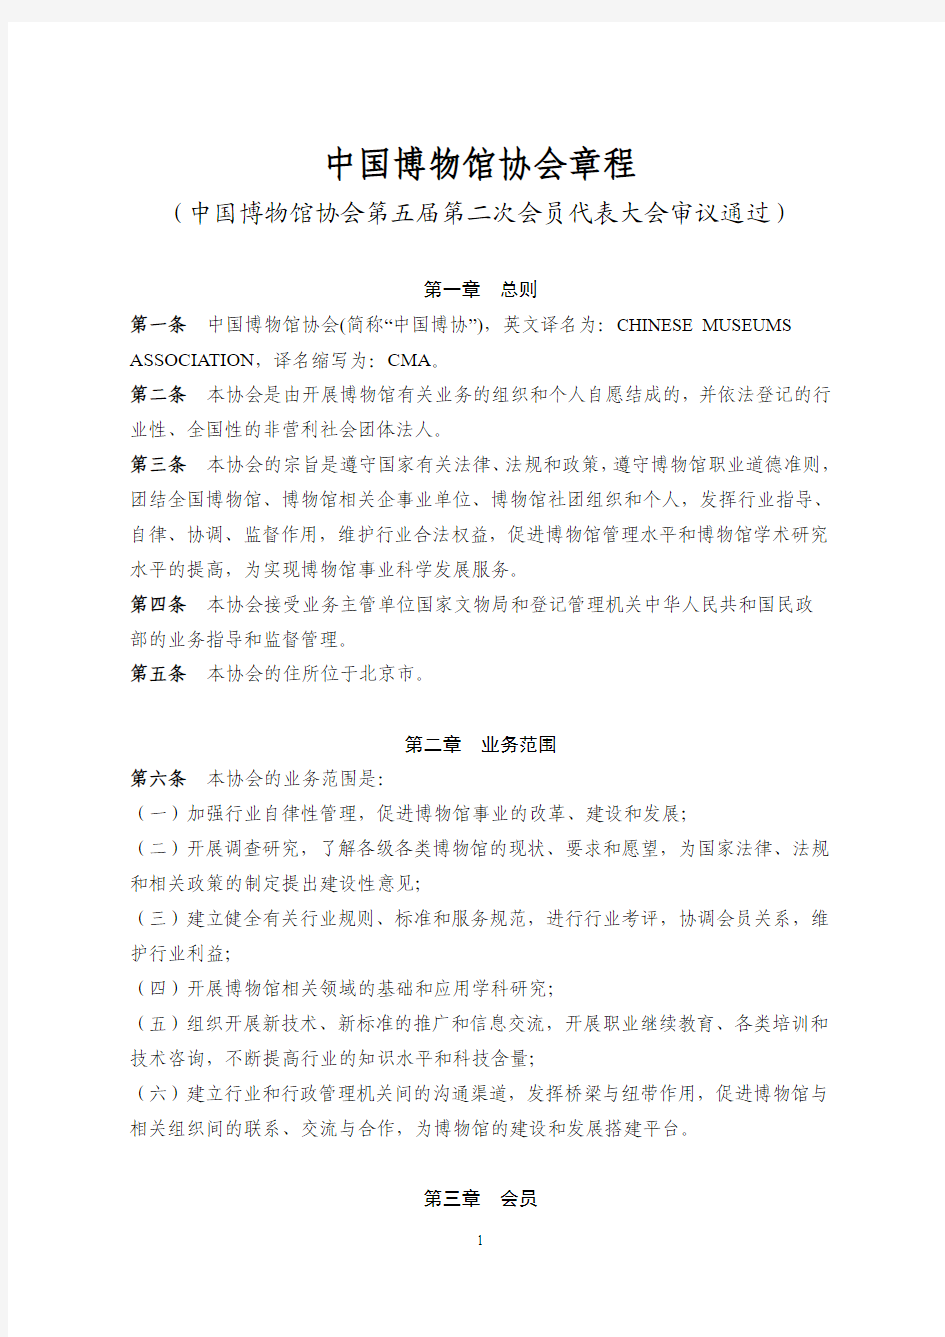 中国博物馆协会章程